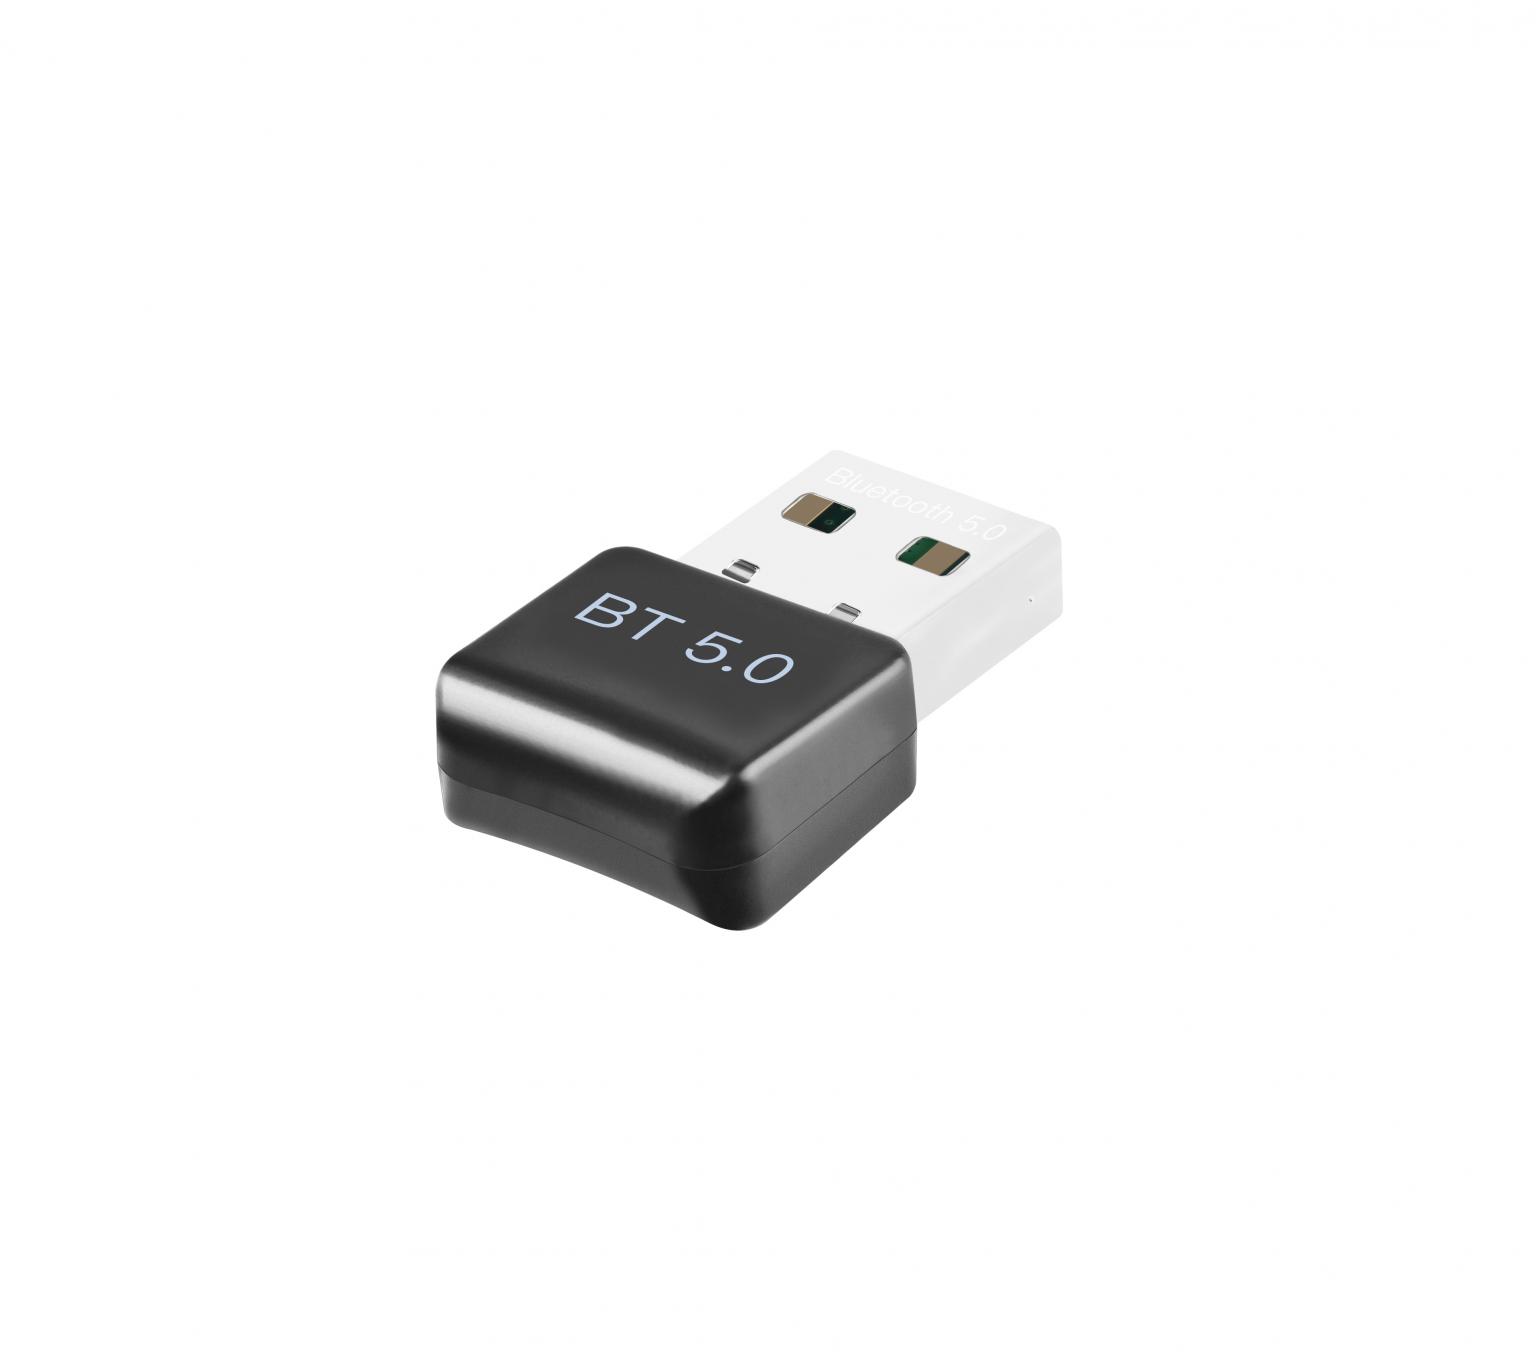 Émetteur et récepteur USB Bluetooth 5.0 - Portée jusqu'à 10 mètres -  Adaptateur Audio